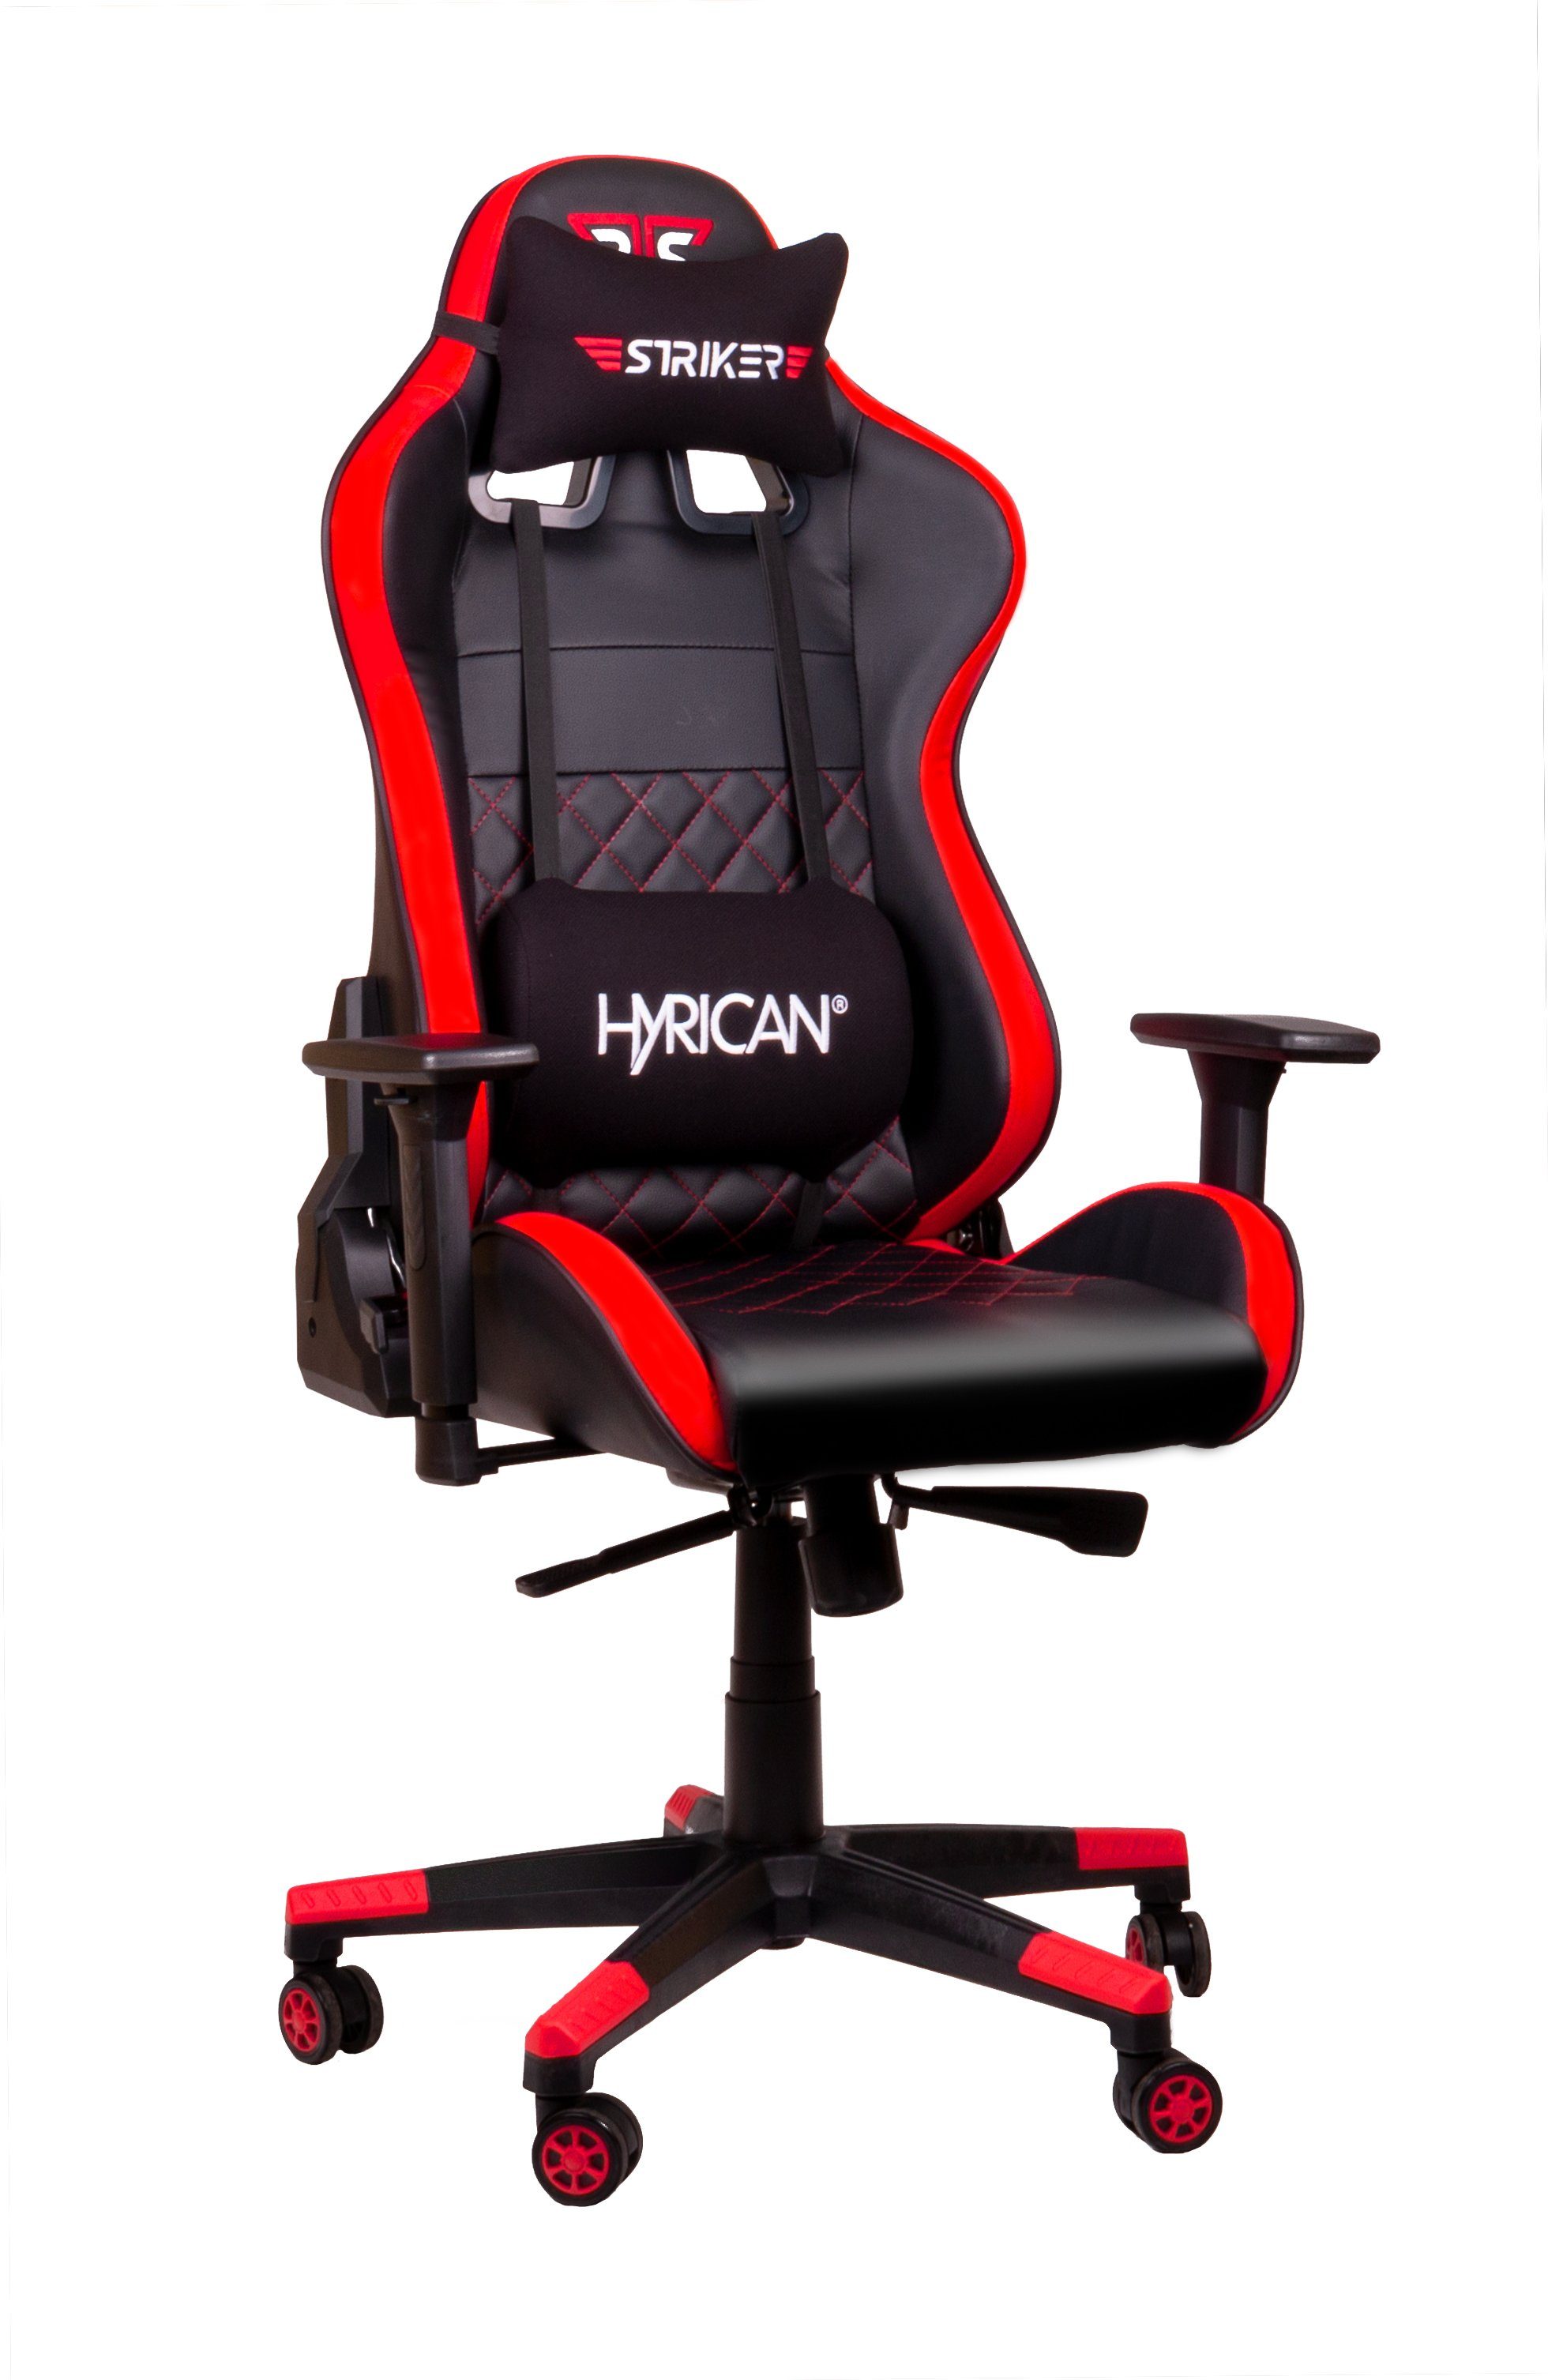 Hyrican Gaming-Stuhl "Striker Code Red Gamingstuhl,Schreibtischstuhl XL" ergonomischer